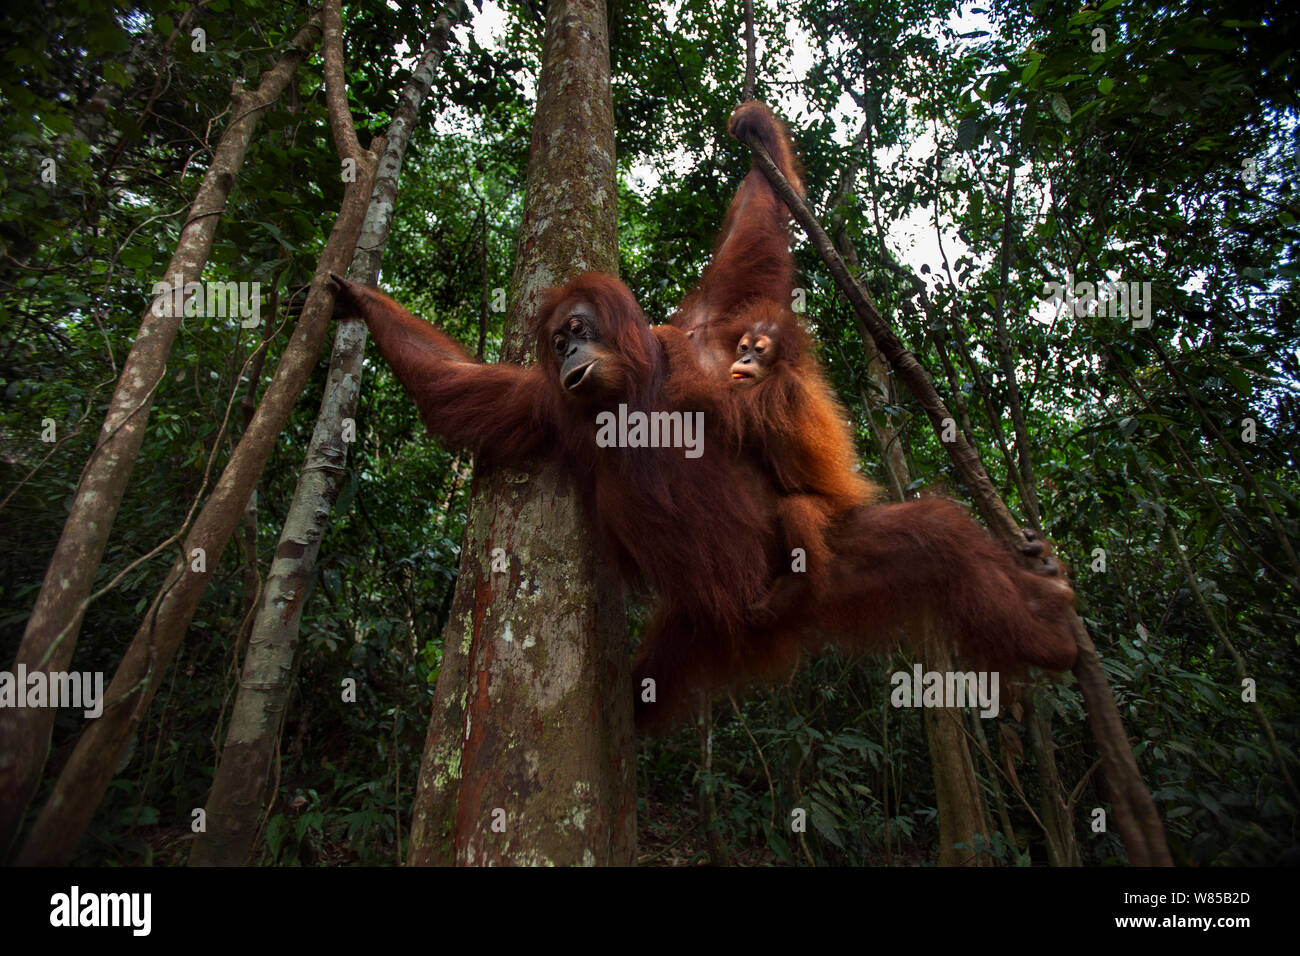 Sumatra Orang-Utans (Pongo abelii) weibliche Andra" im Alter von 22 Jahren und Andri's ihr Töchterchen' im Alter von 1-2 Jahren an einer Liane. Gunung Leuser Nationalpark, Sumatra, Indonesien. Rehabilitiert und freigegeben (oder von denen, die zwischen 1973 und 1995 veröffentlicht wurden). Stockfoto